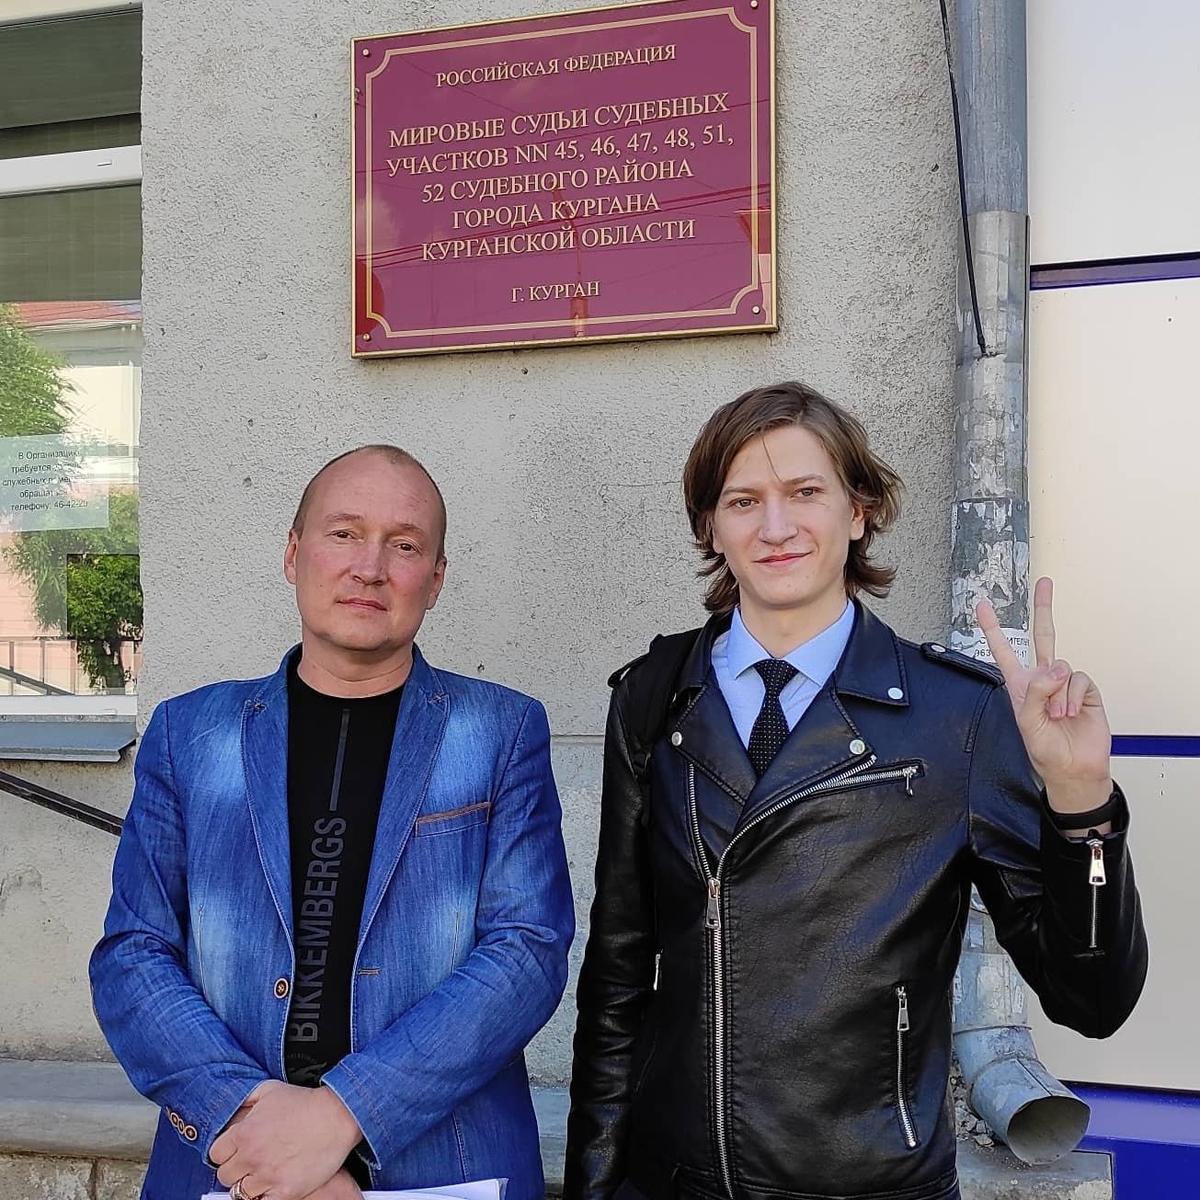 Алексей с адвокатом у здания суда после заседания по уголовному делу за раскрытие тайны фальсификаций голосования по поправкам в Конституцию. Фото:  Facebook